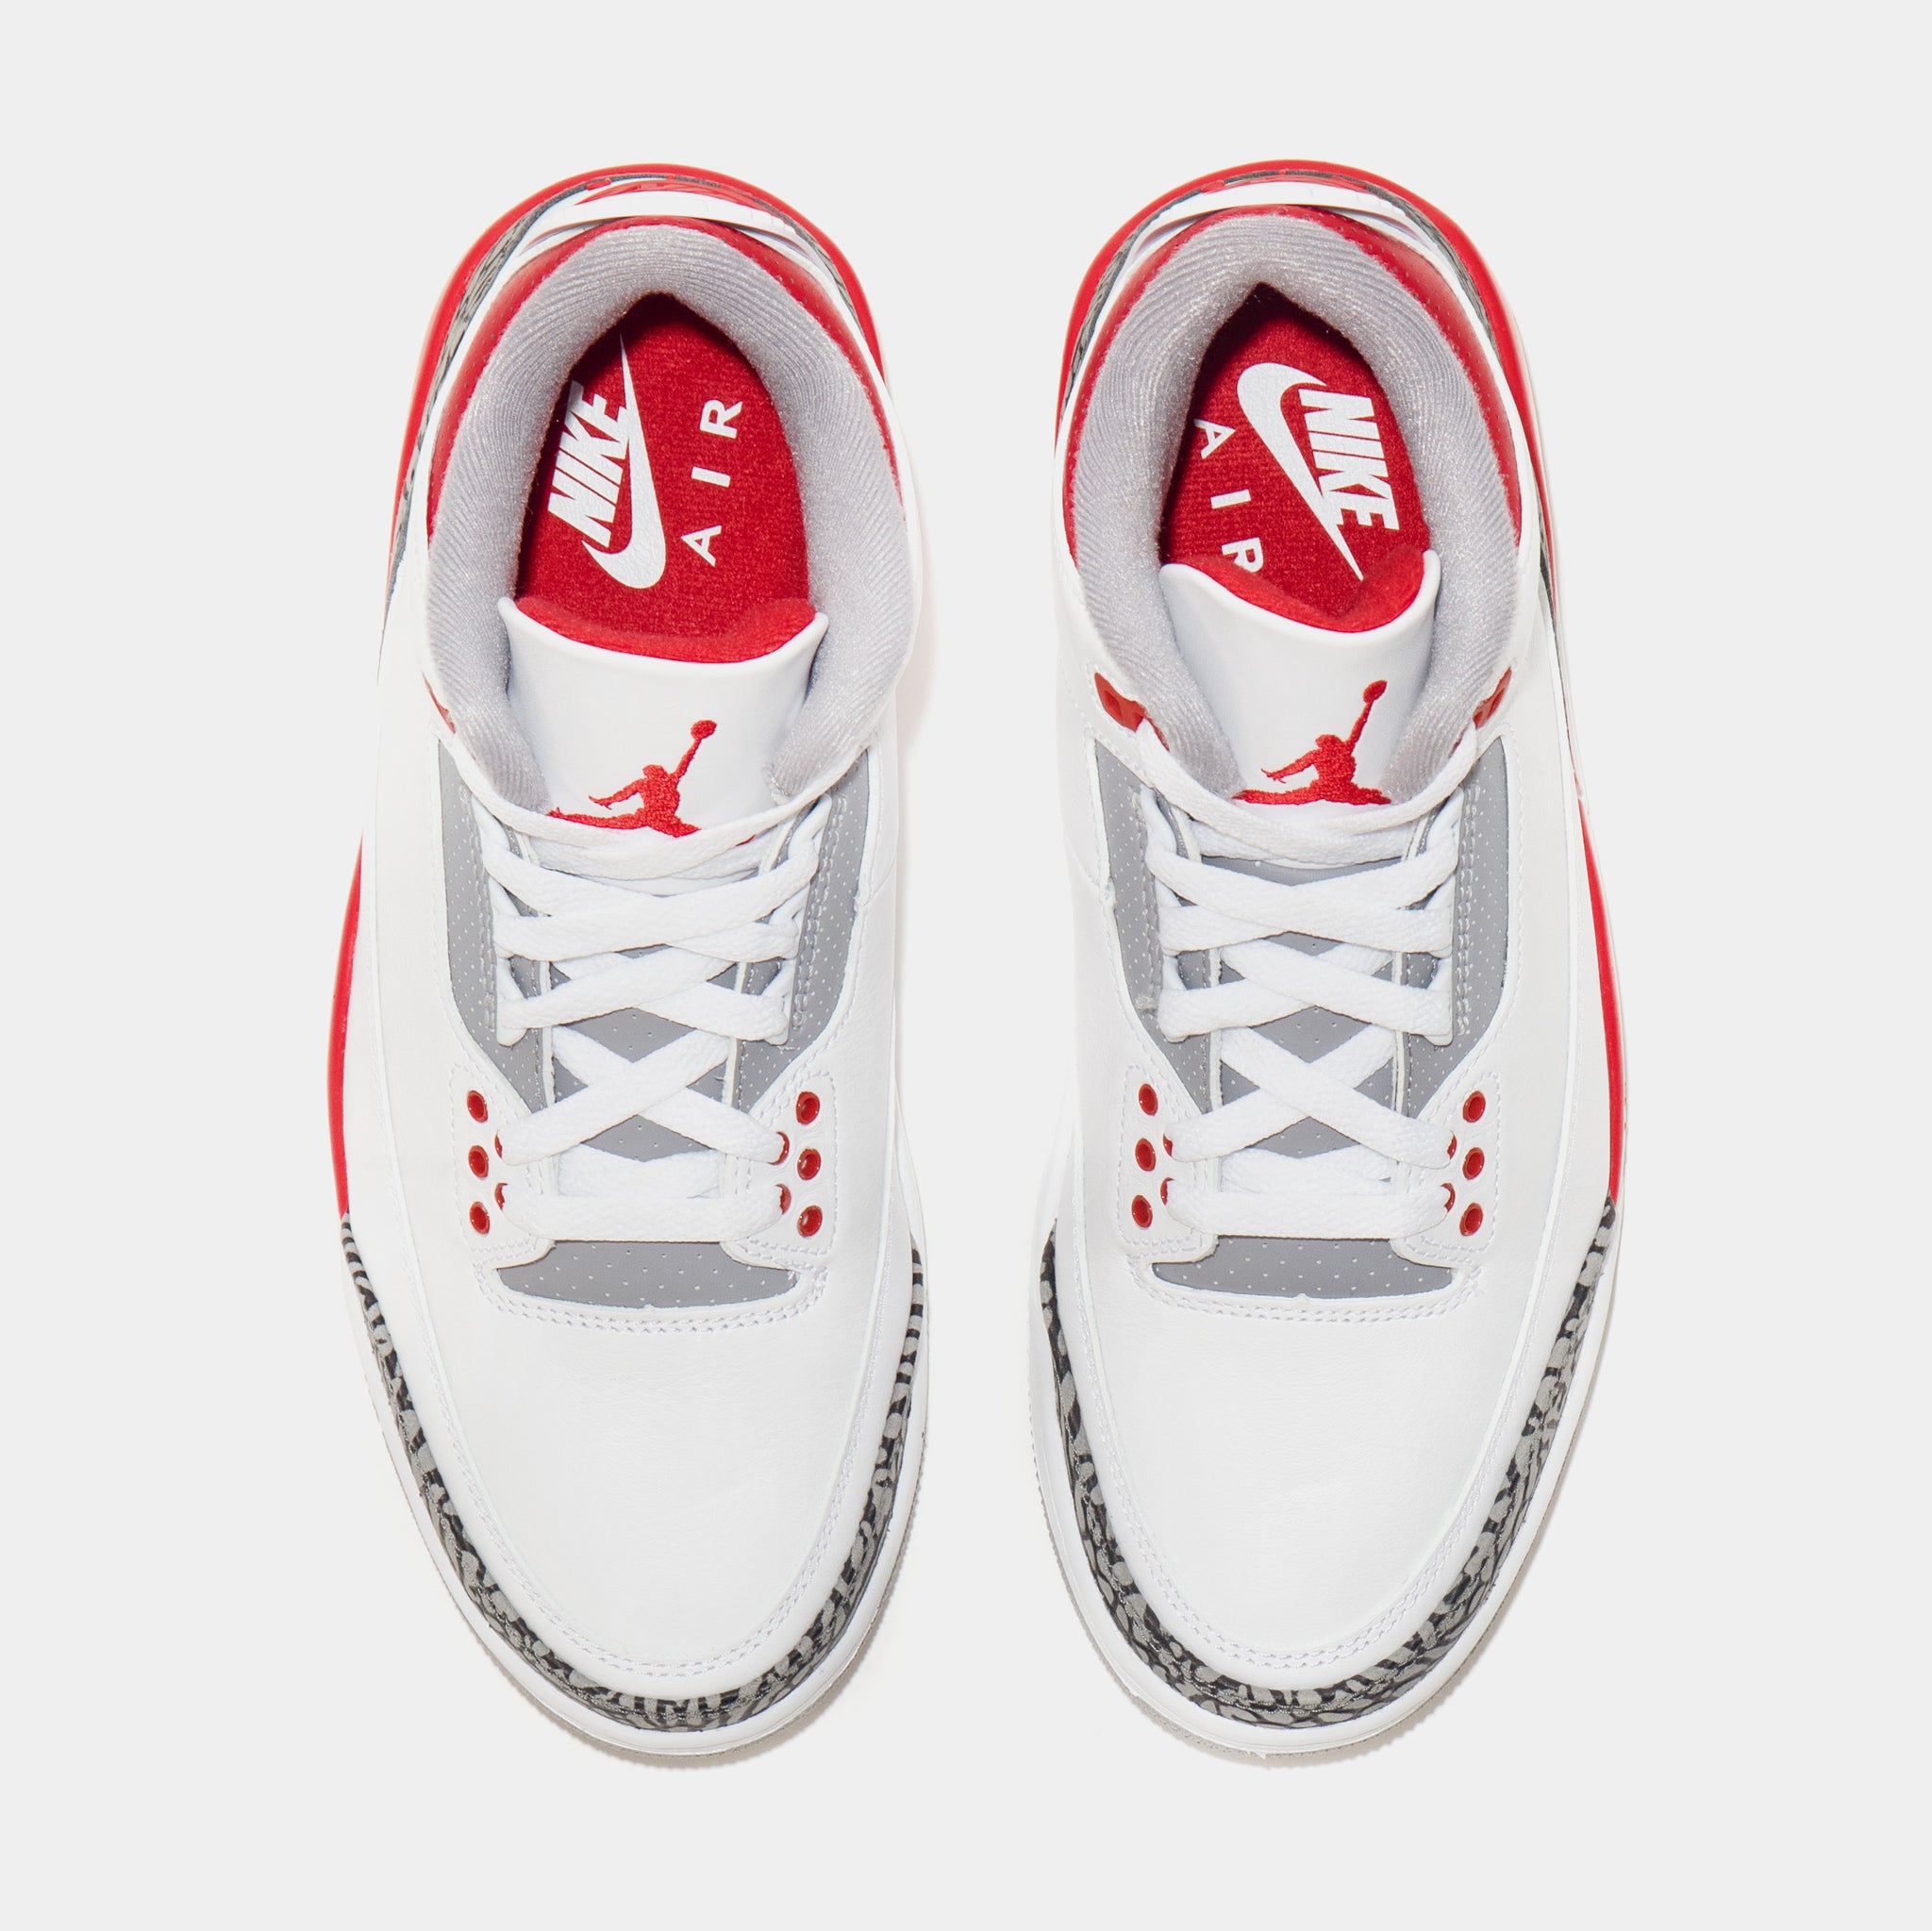 Jordan Air Jordan 3 OG Fire Red Mens Lifestyle Shoes Red White